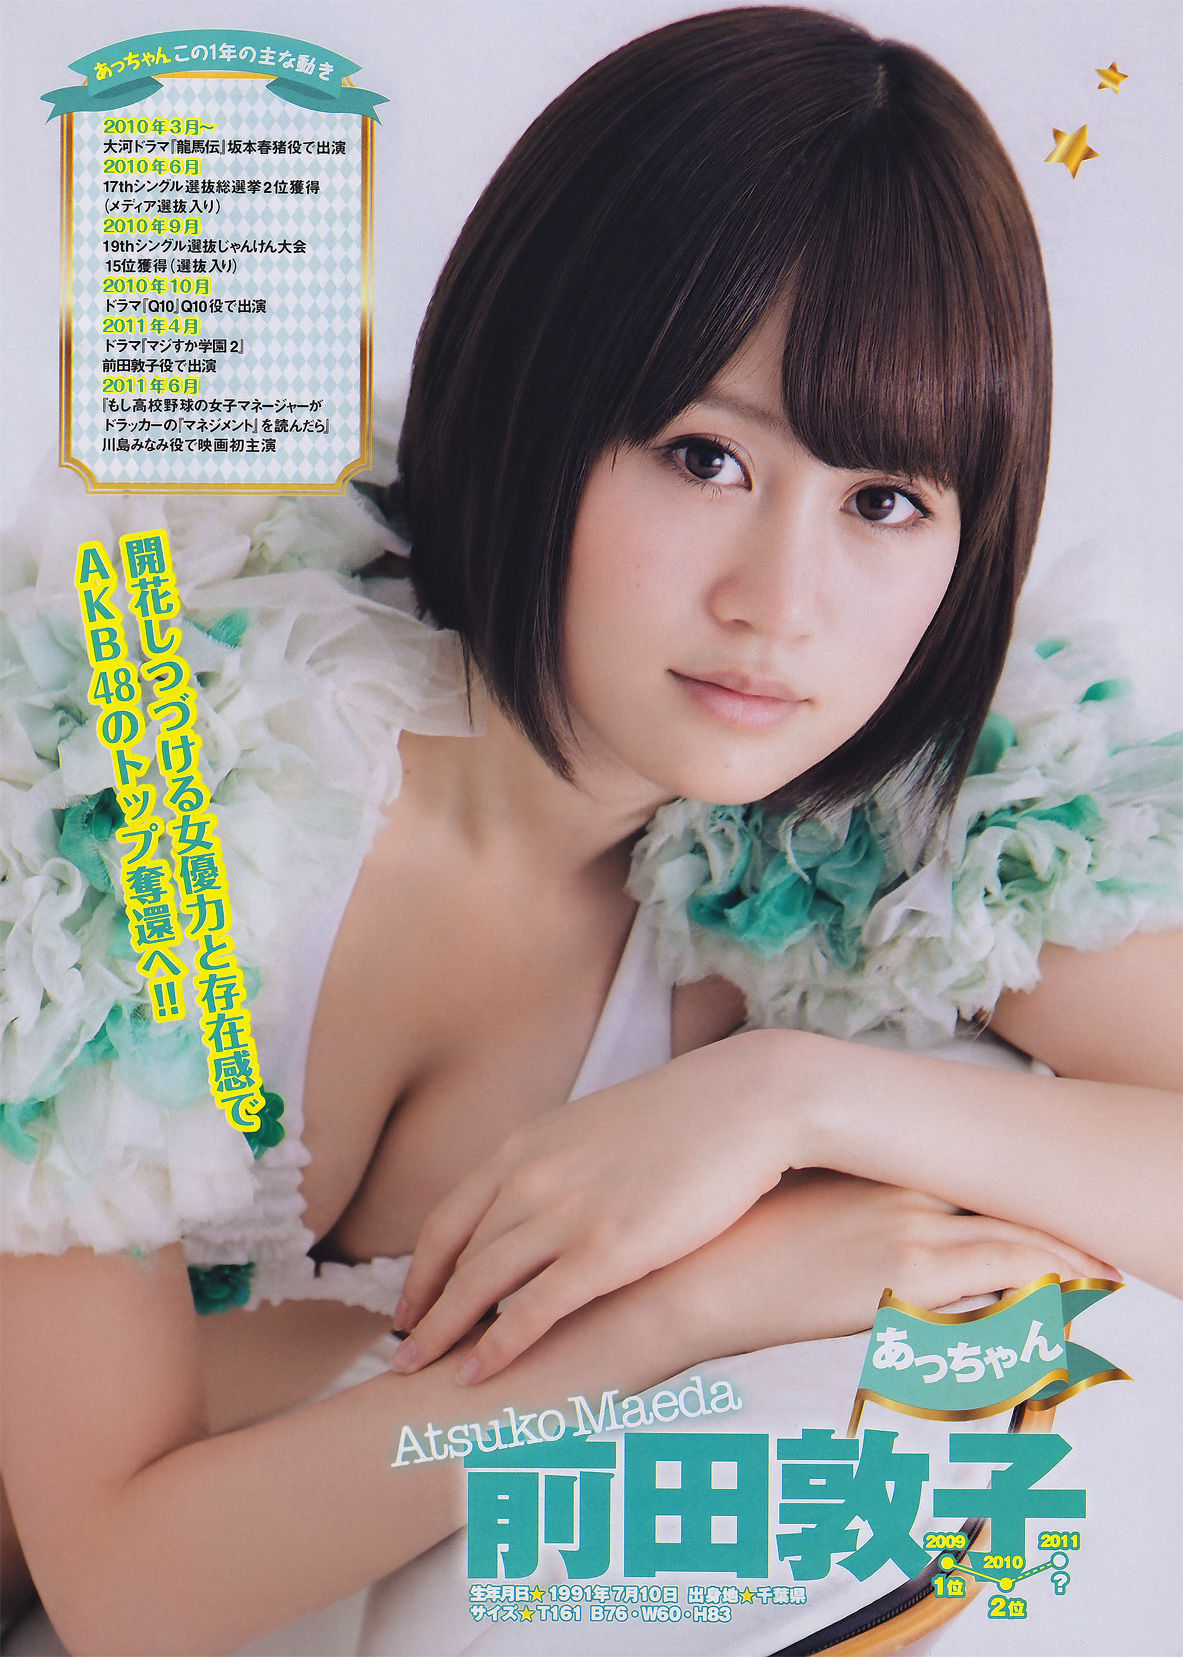 [Young Magazine]杂志:AKB48高品质壁纸图片珍藏版(15P)